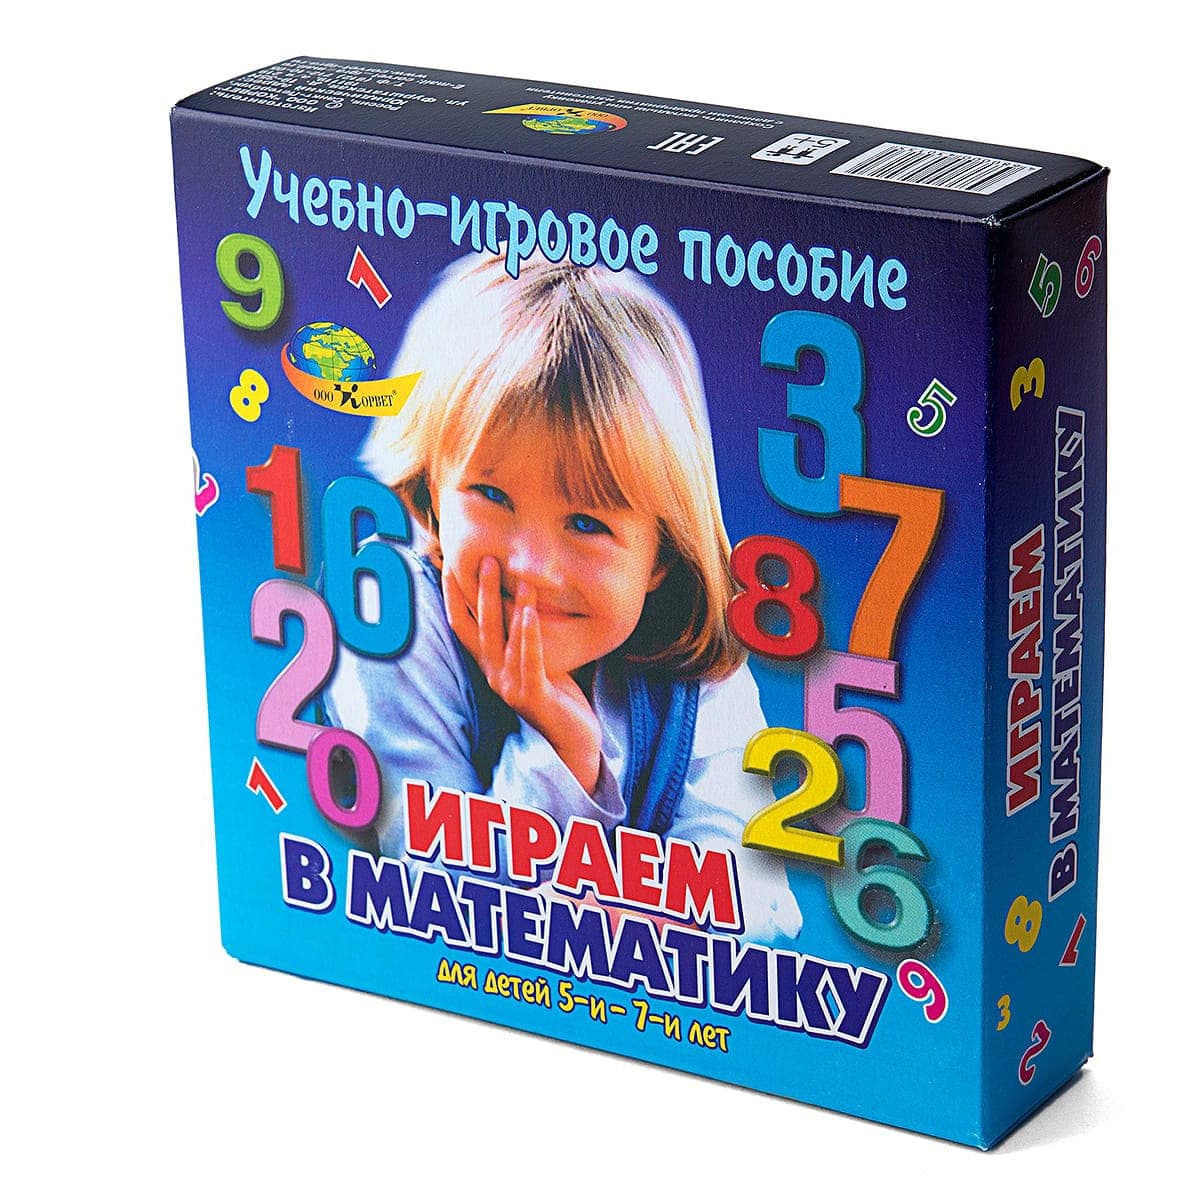 Пособие Играем в математику 430135 Корвет - Ульяновск 